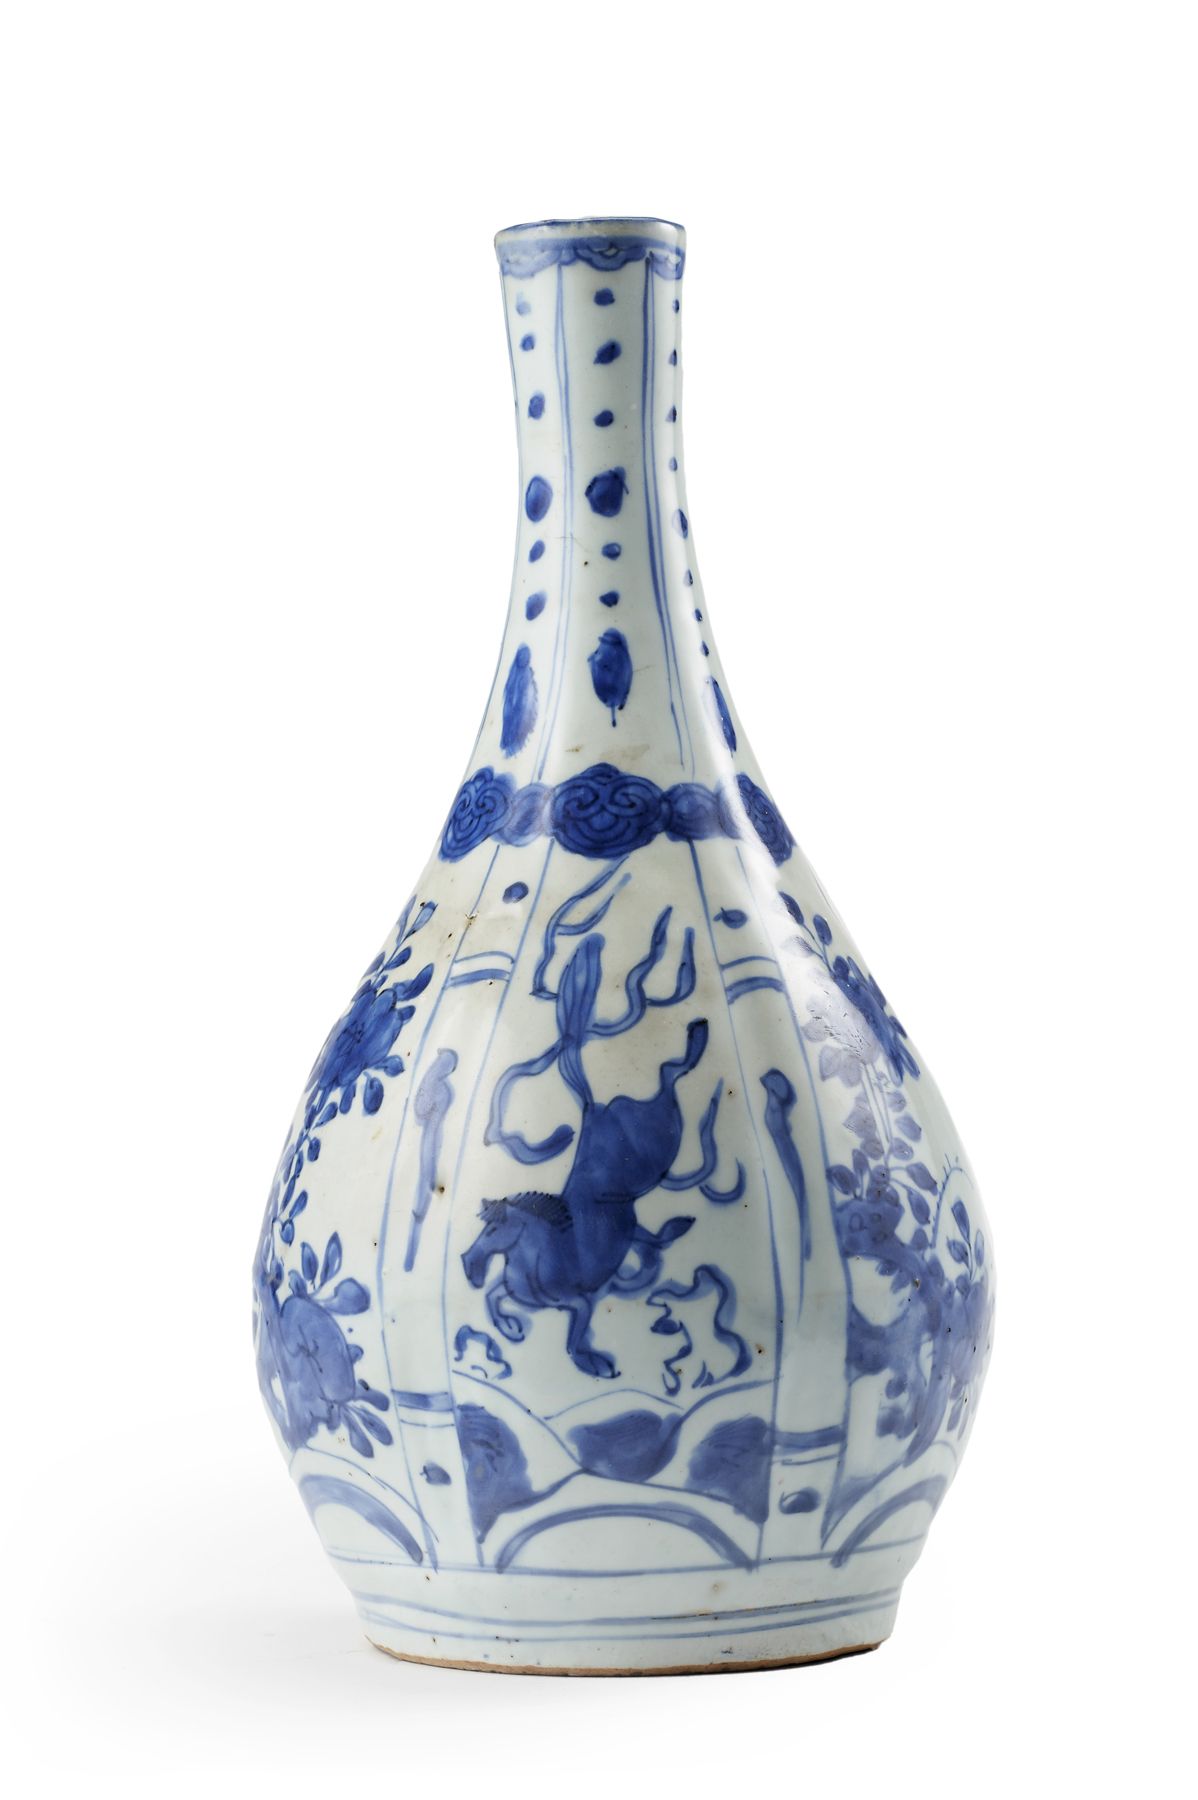 Null 克拉玛依青花瓶（略有瑕疵）
中国，明朝(1368-1644)
(高28厘米)

瓷器
青花瓷瓶，装饰以花卉和动物为主题的幻想（轻微瑕疵)
中国，明朝(&hellip;